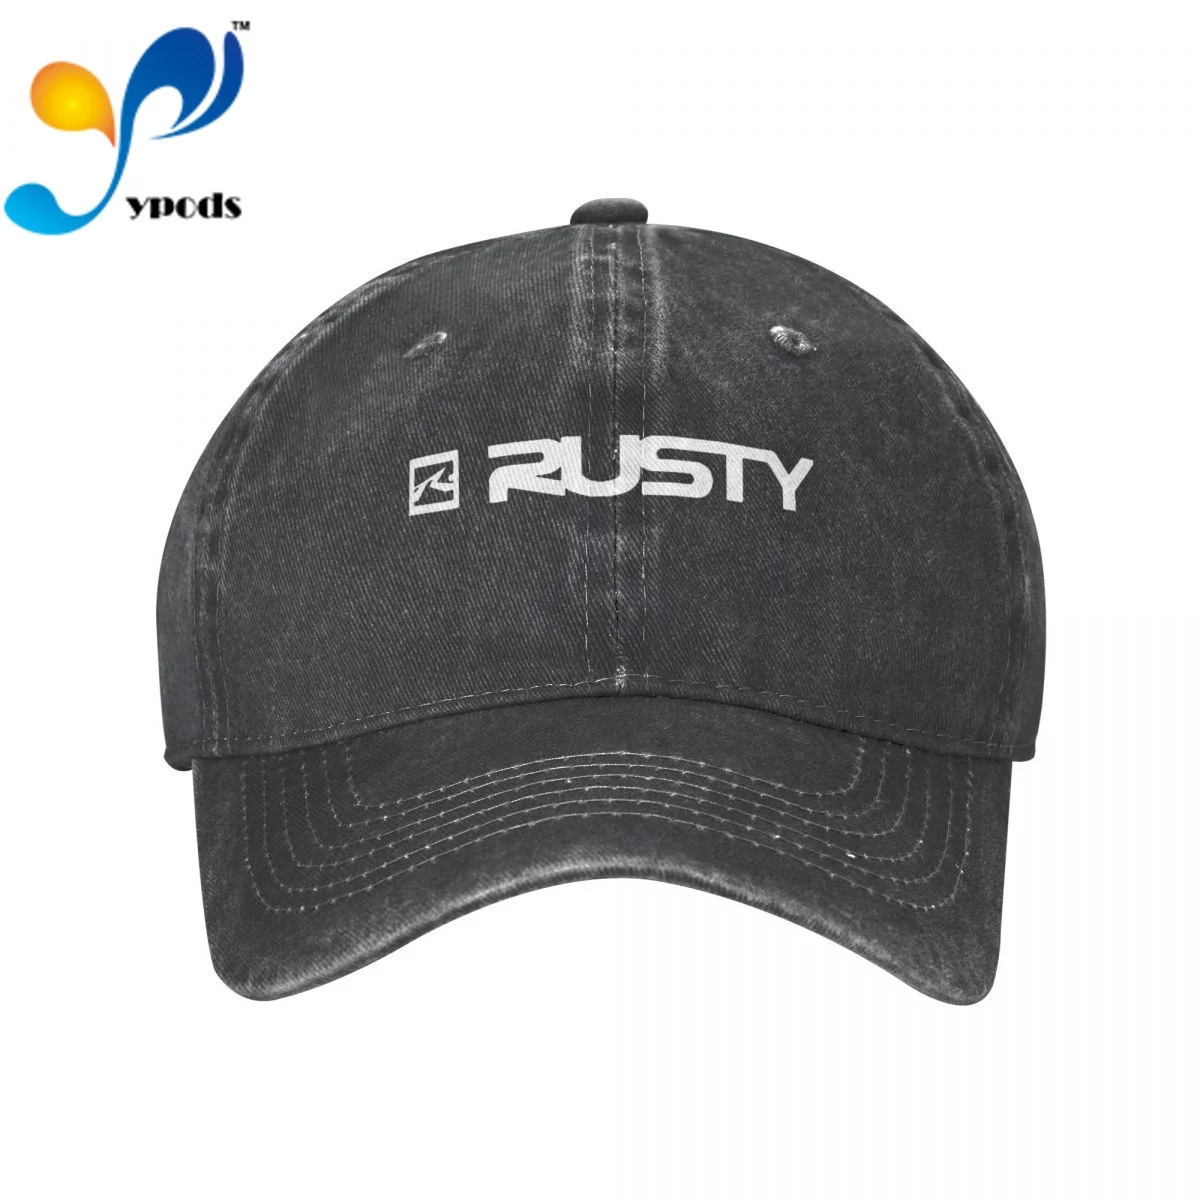 

Джинсовая бейсболка с логотипом компании S ржавый стиль, Снэпбэк кепки, осенняя летняя шапка для мужчин и женщин, кепки, кепки, головные убор...